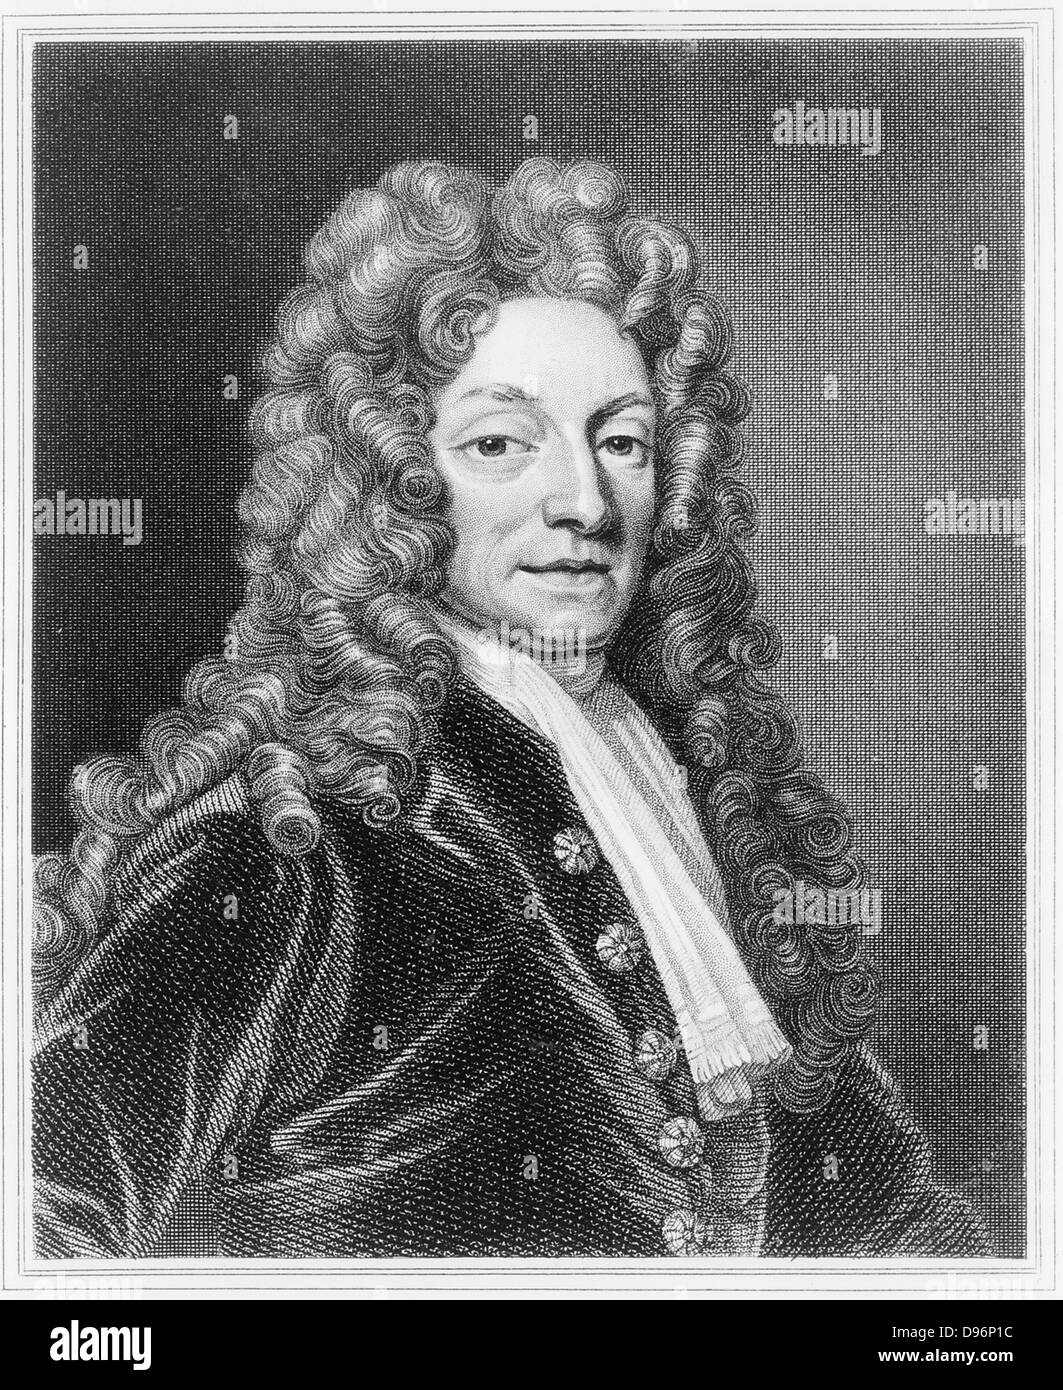 Englischen Architekten Christopher Wren (1632-1723), Mathematiker und Physiker. 18. Jahrhundert Gravur. Stockfoto